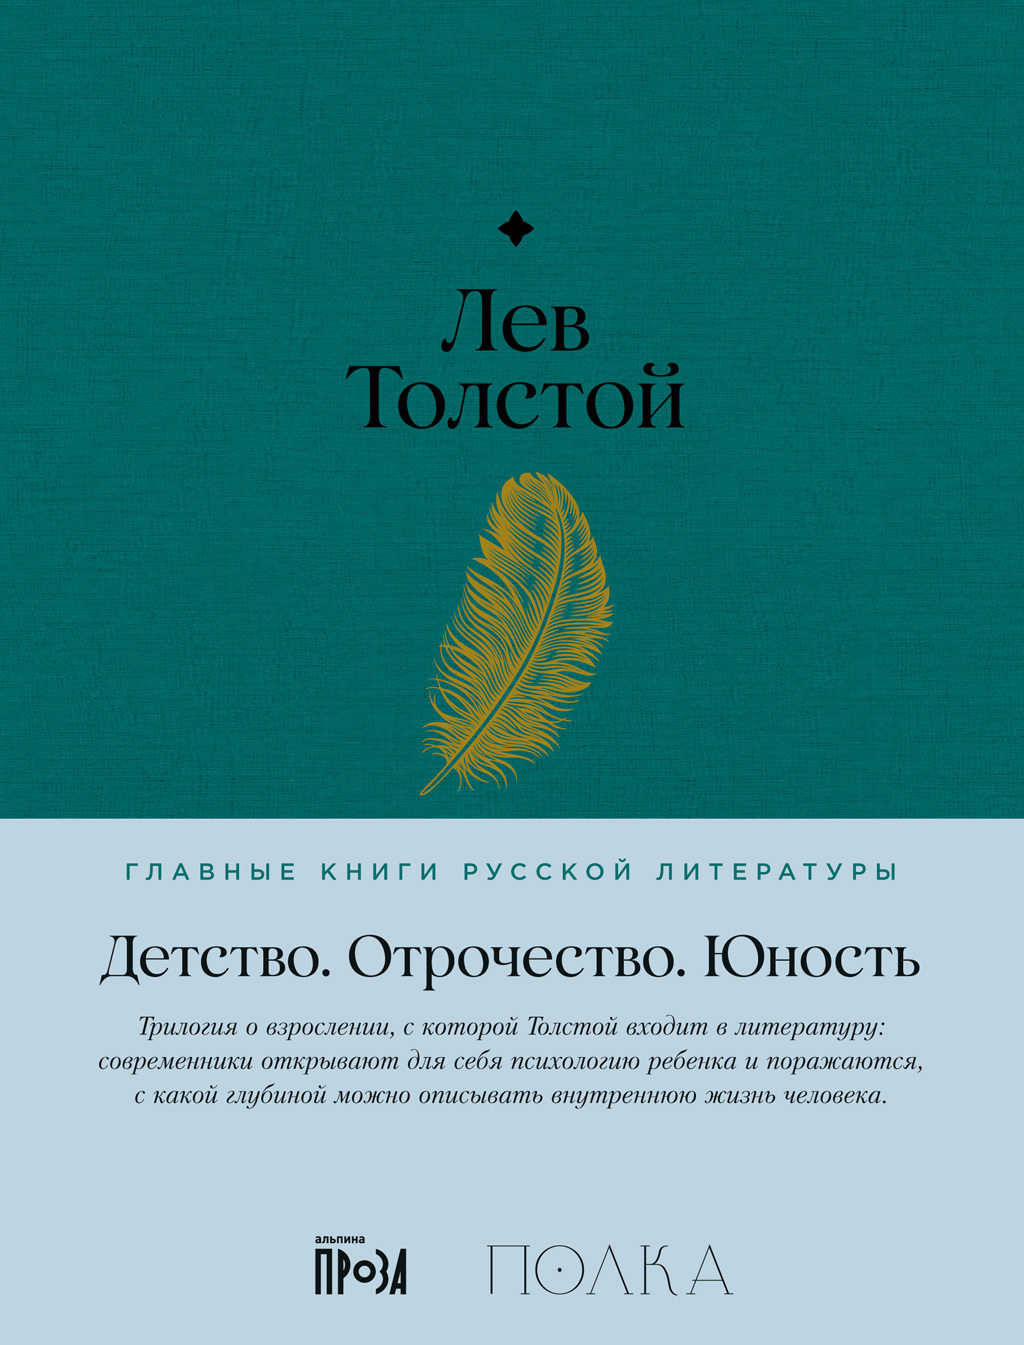 Лев Толстой - краткая биография и факты